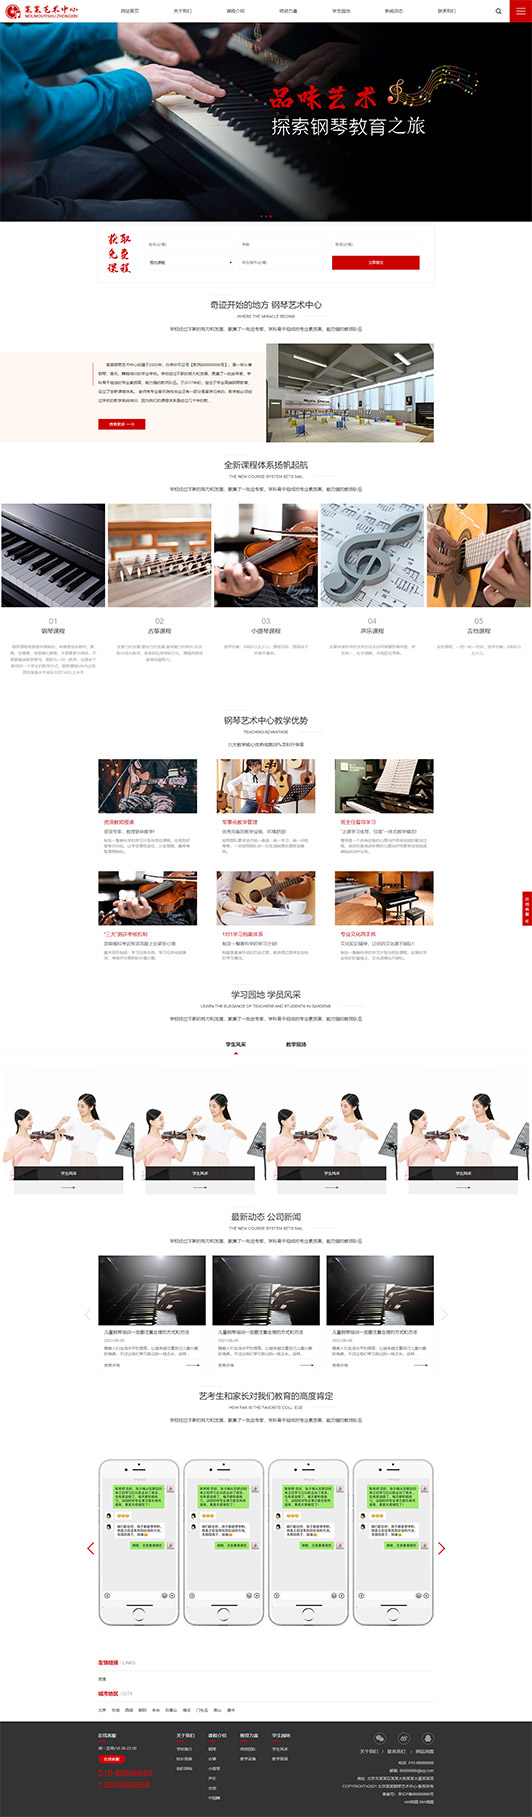 青岛钢琴艺术培训公司响应式企业网站